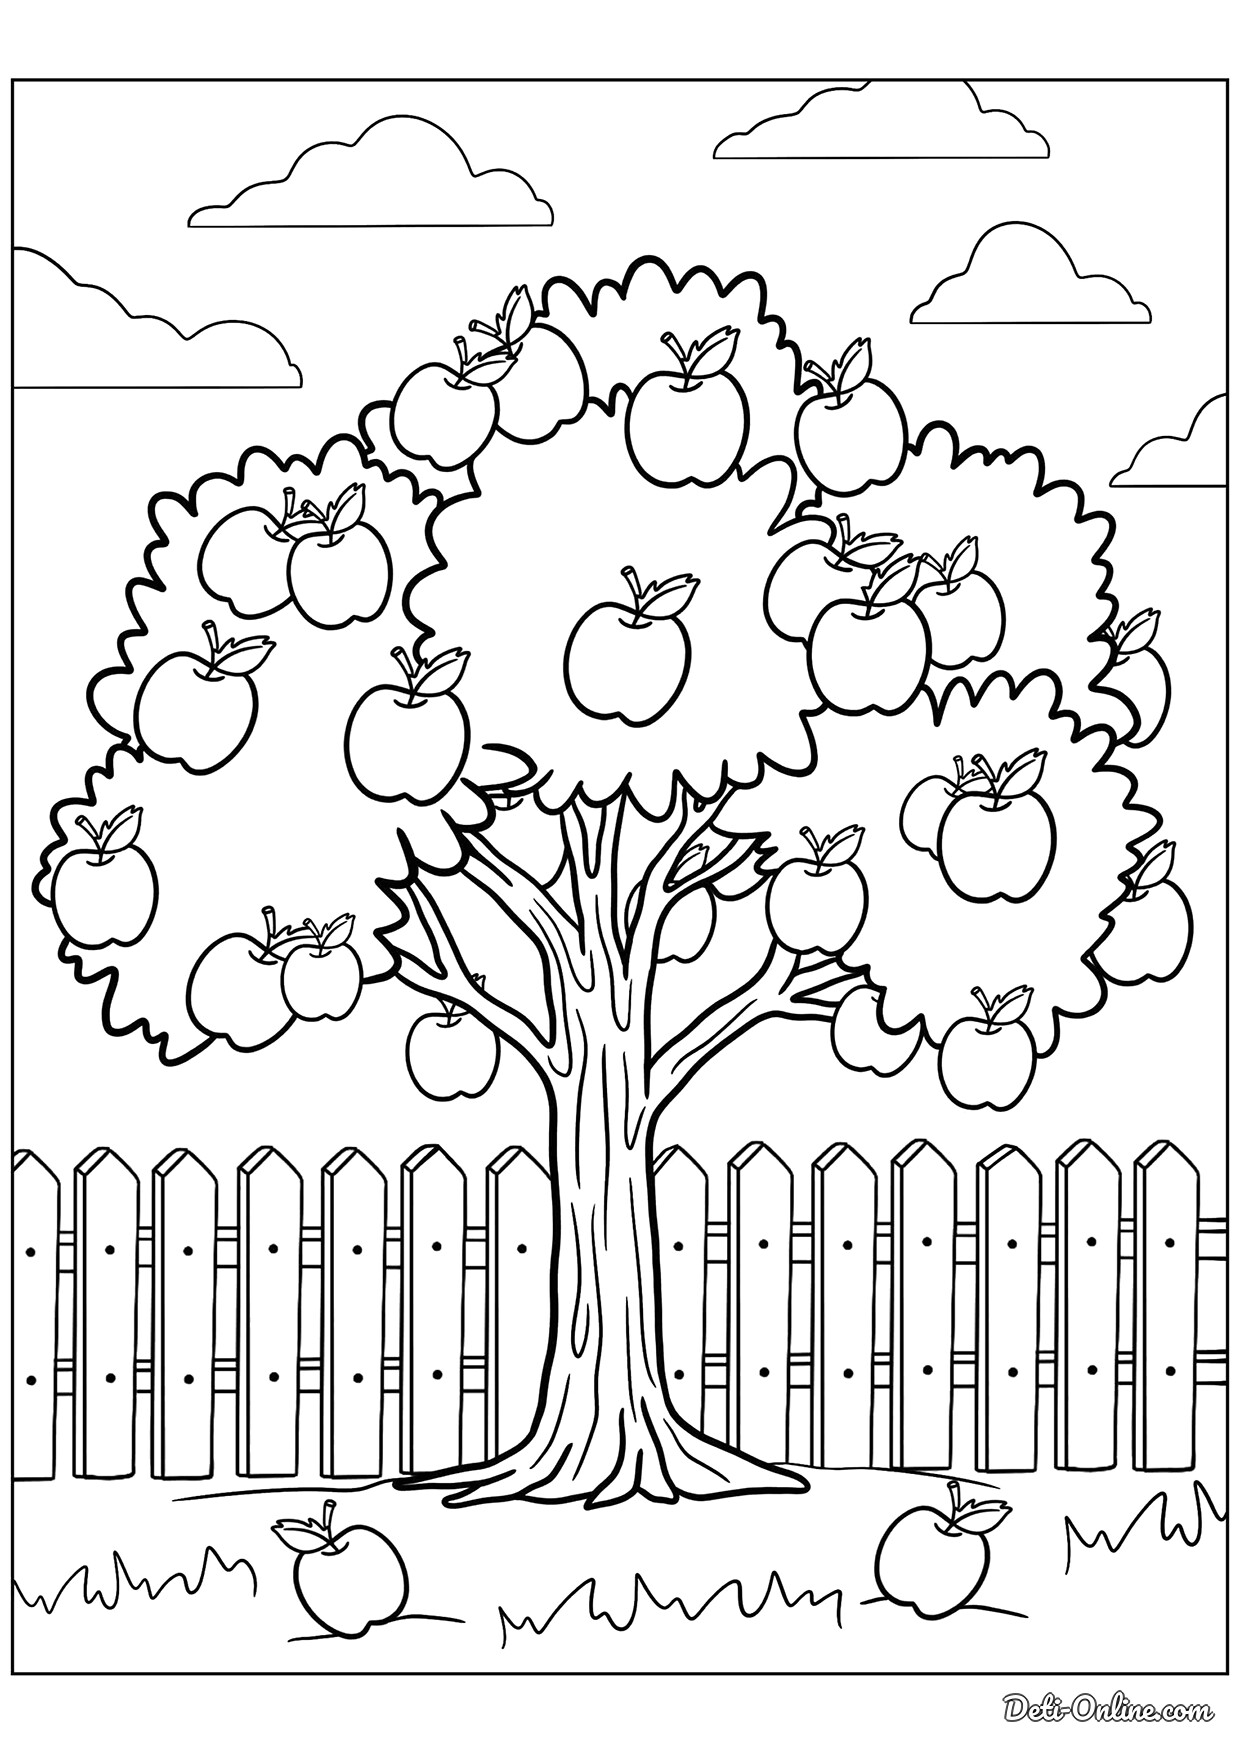 Раскраска Яблоня с яблоками распечатать или скачать